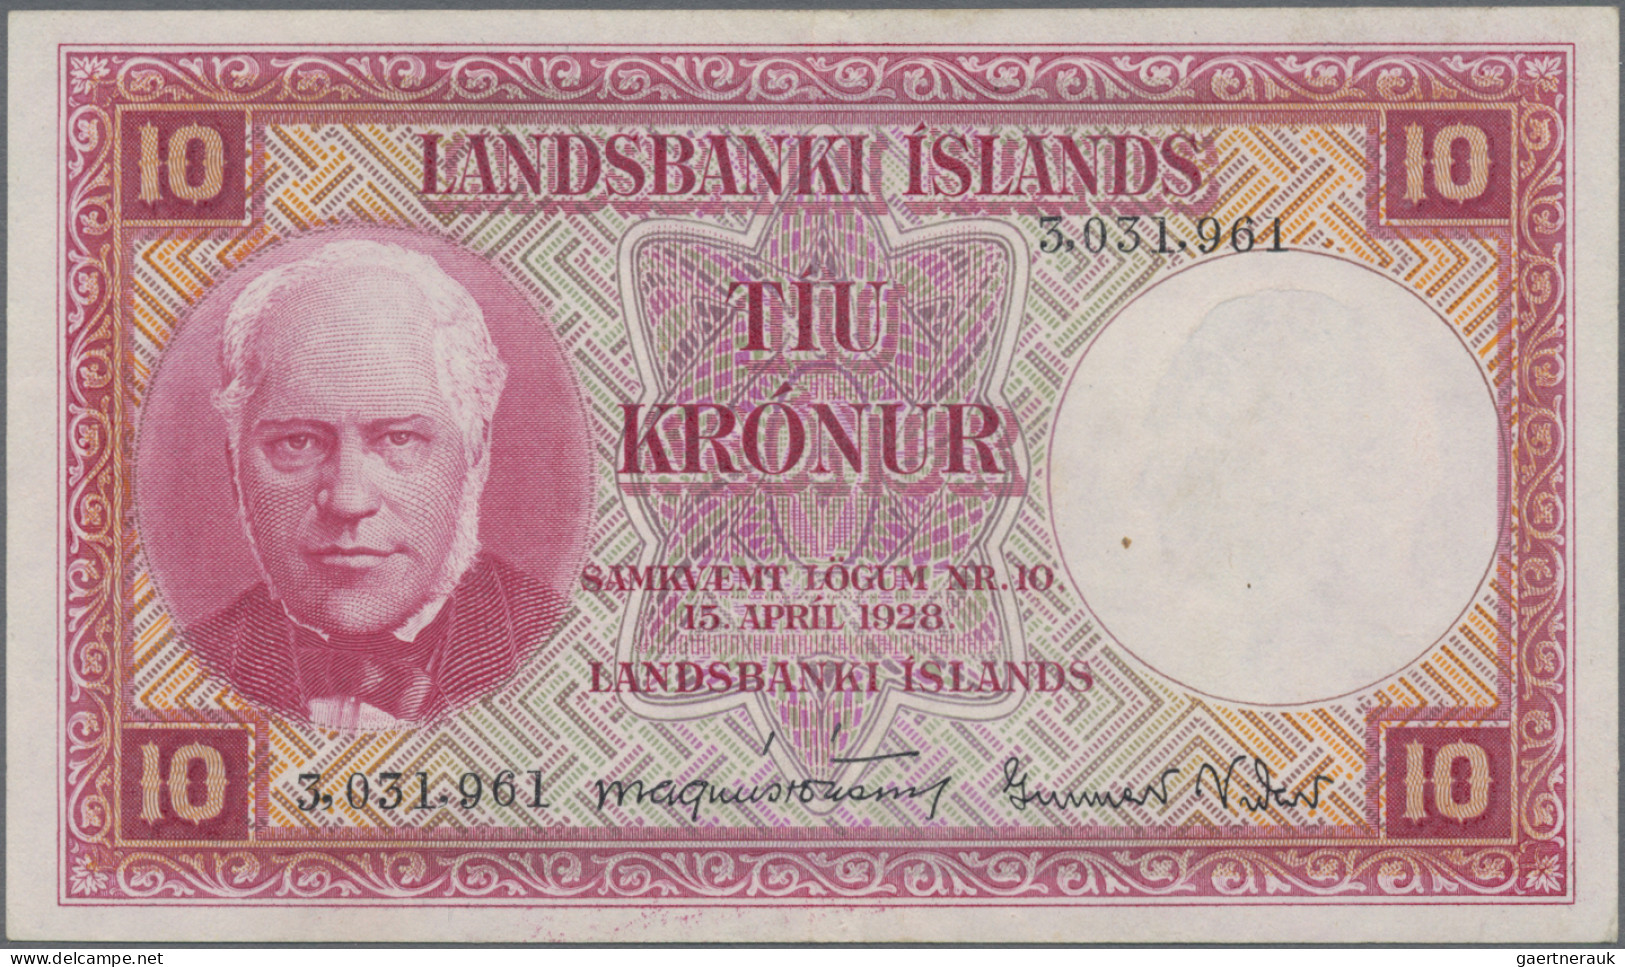 Iceland: Landsbanki Íslands, set with 7 banknotes, series L.15.04.1928, with 2x